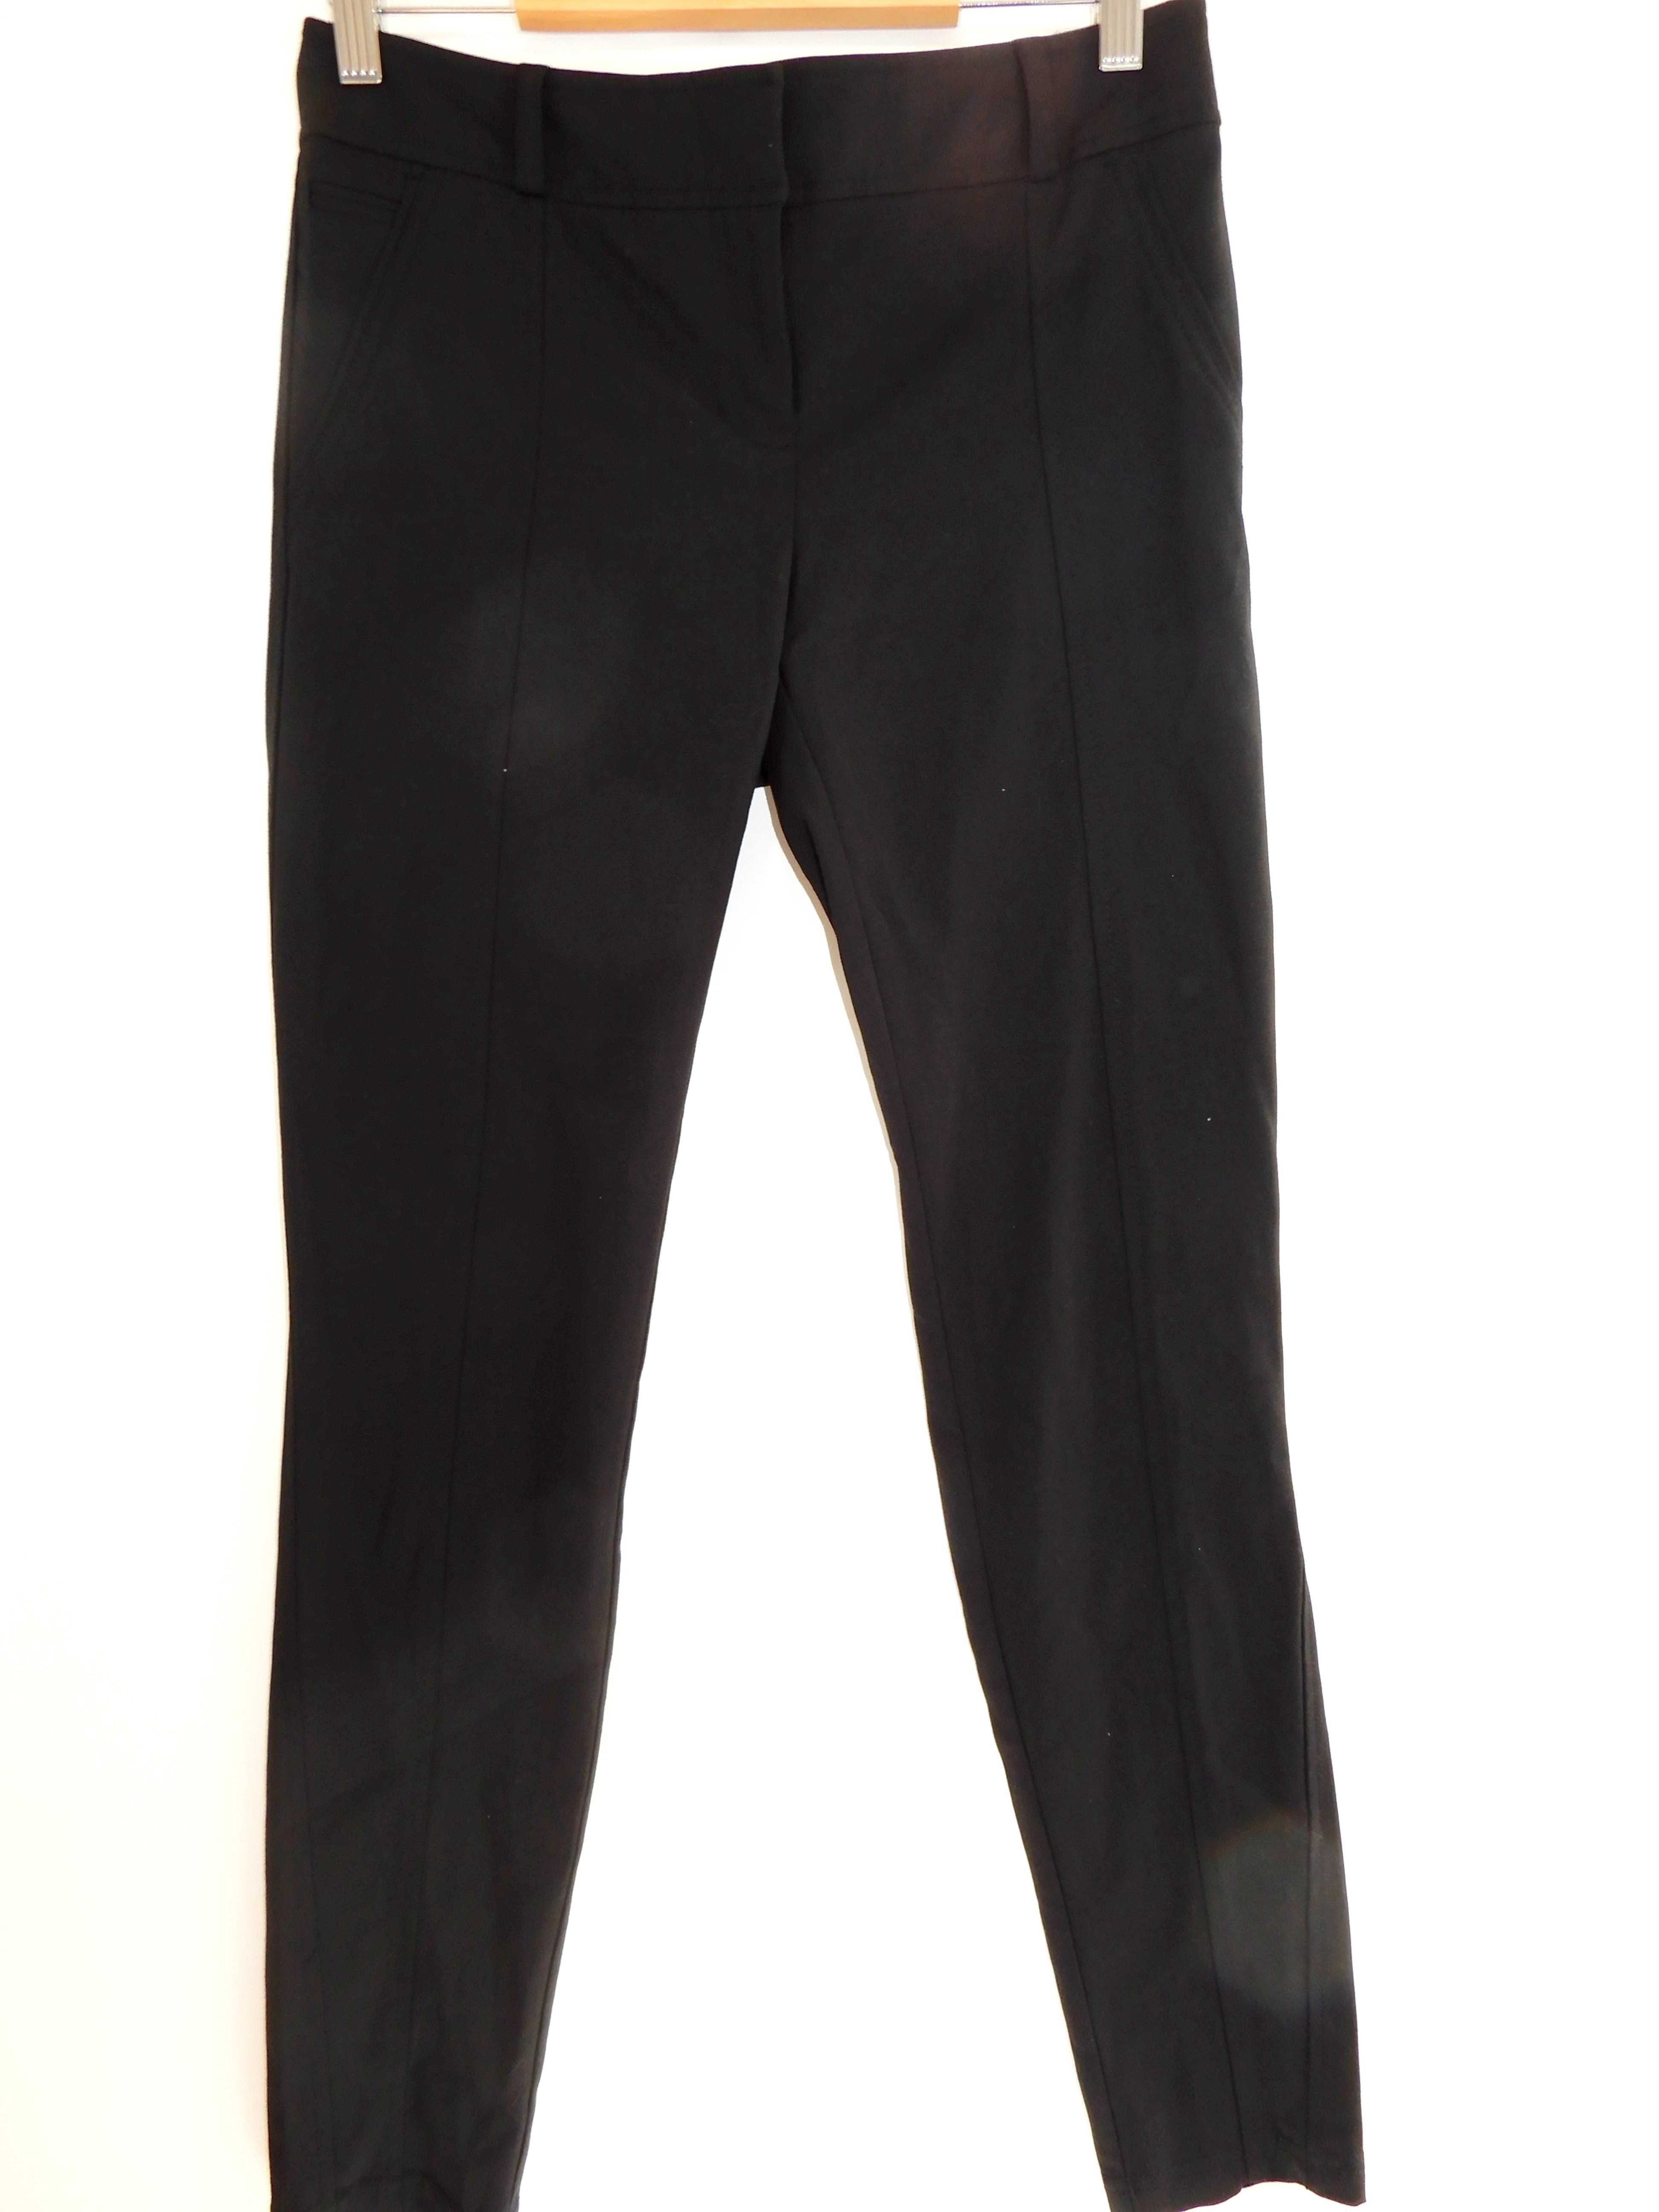 Spodnie rurki skinny materiałowe czarne River Island 34/36 XS/S